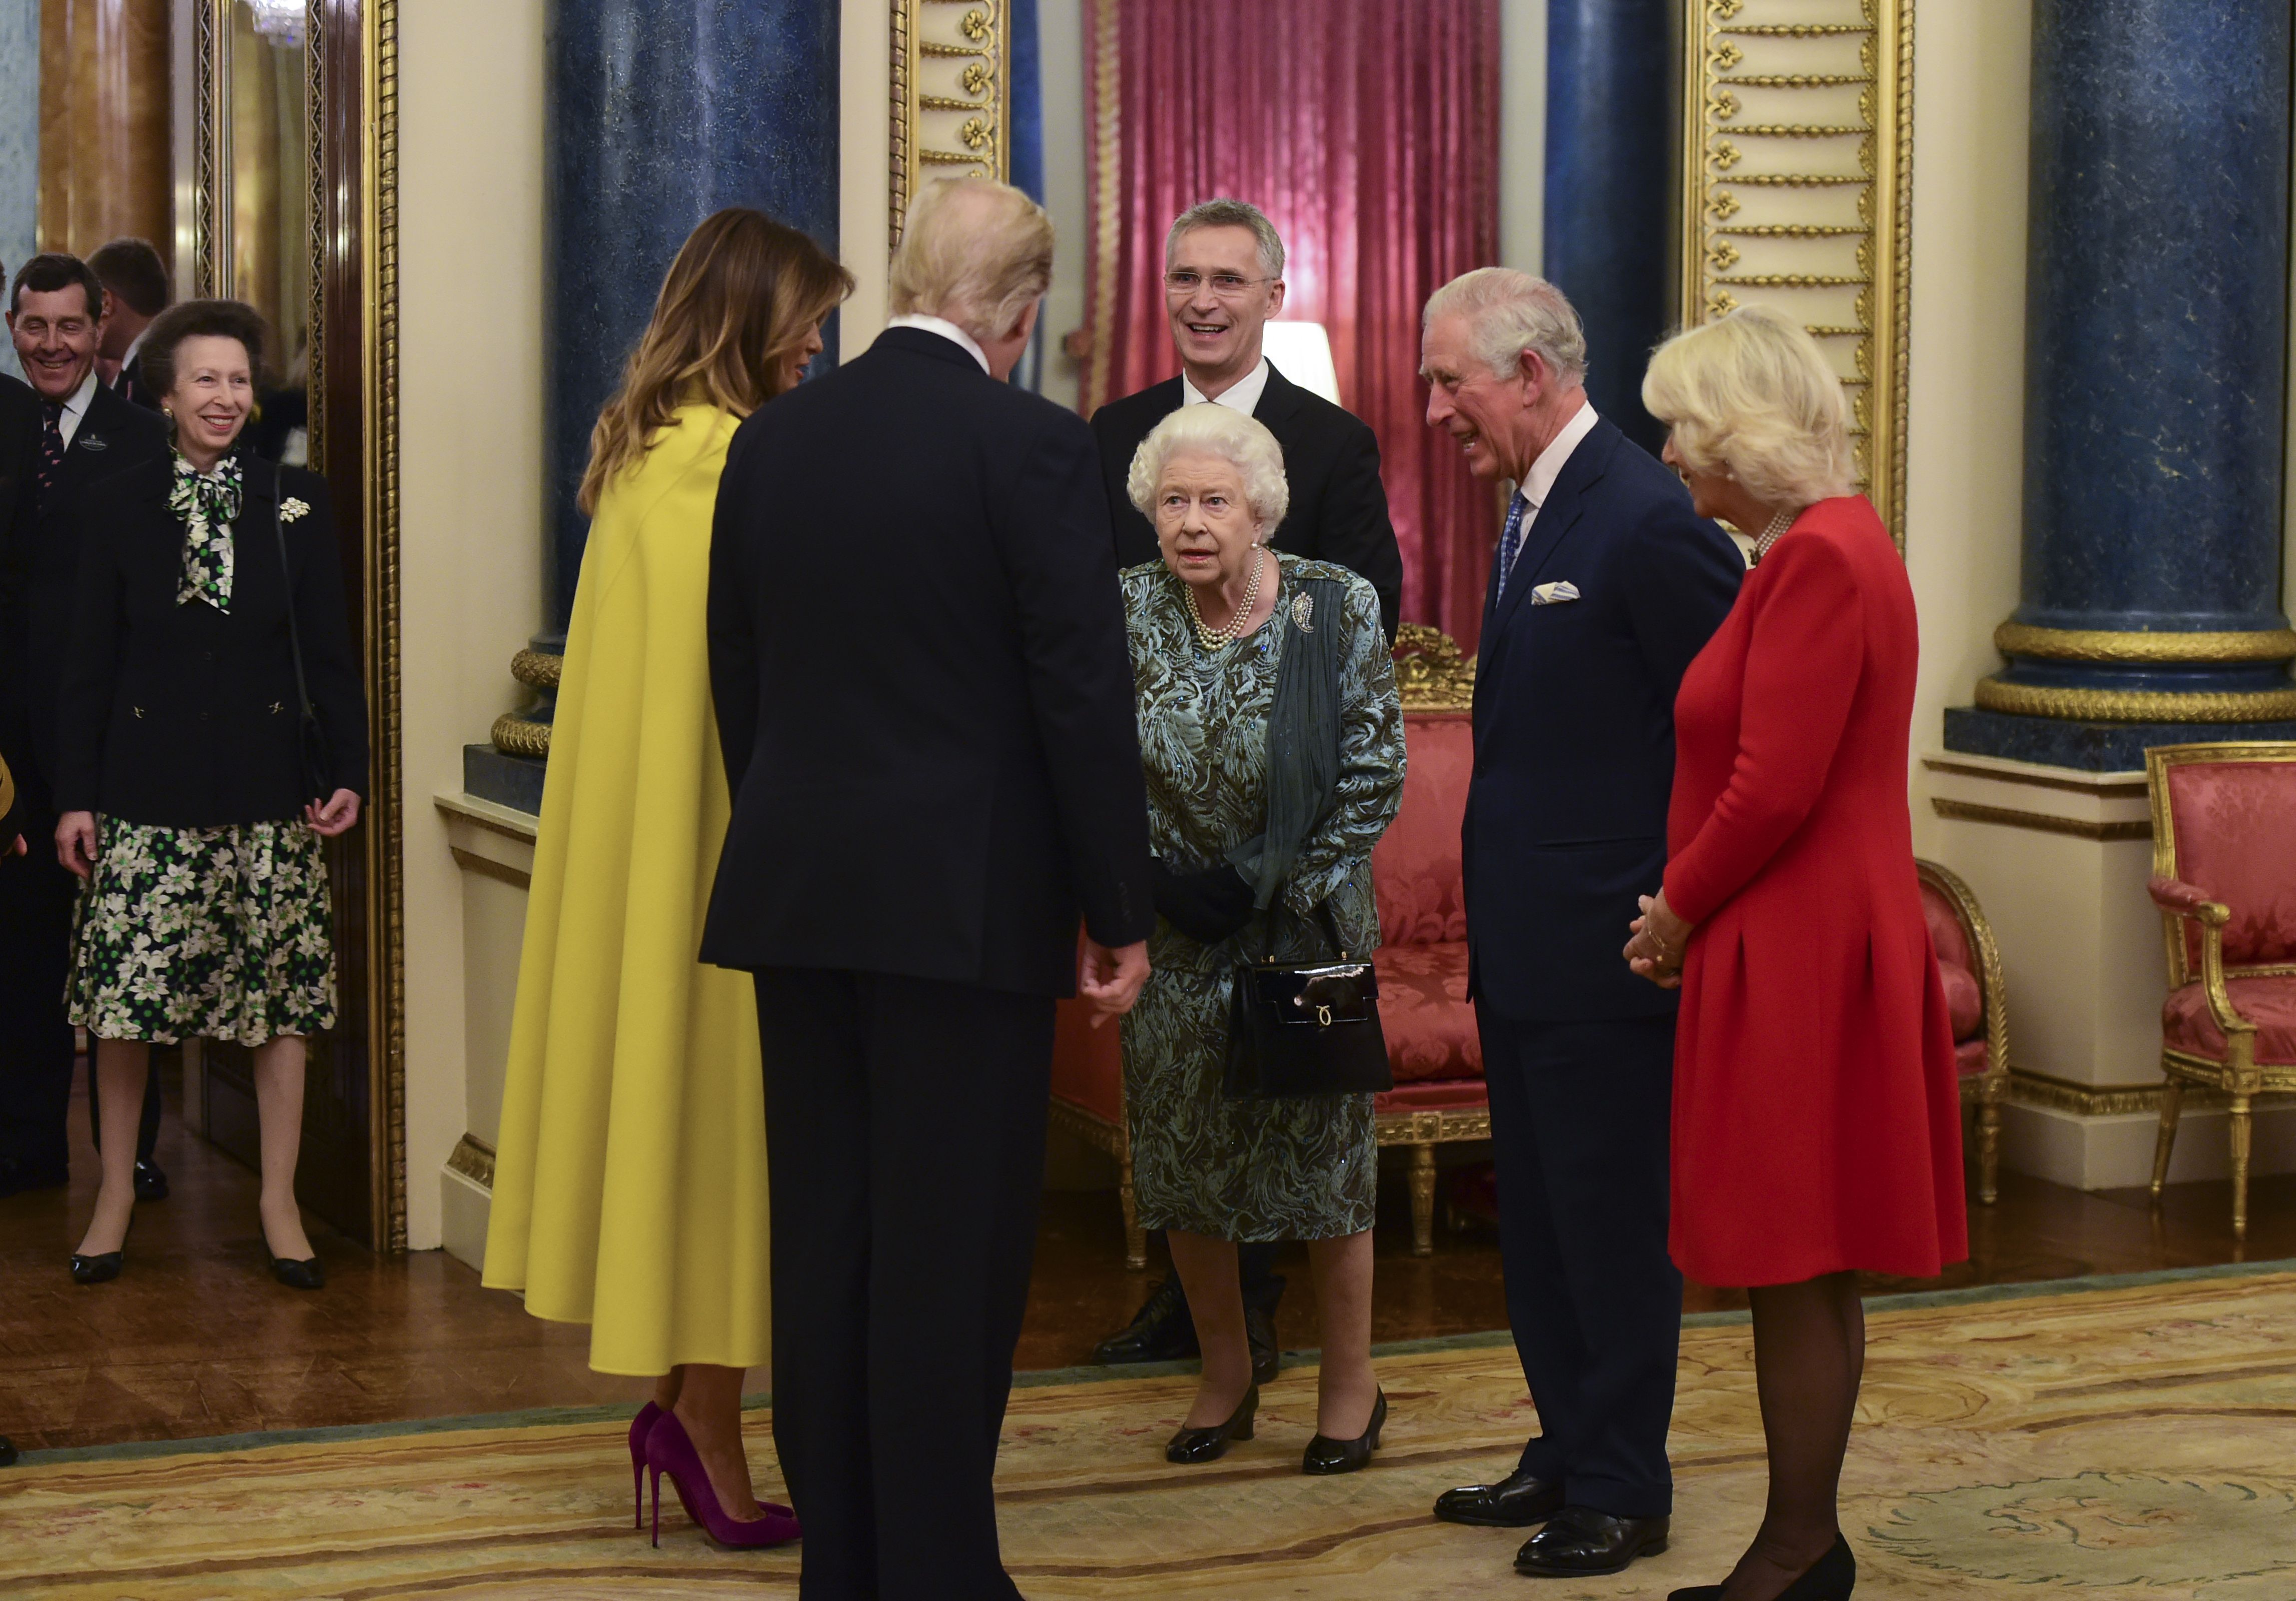 エリザベス女王に口答えした疑惑が浮上 アン王女 トランプ大統領との握手を笑顔で拒否